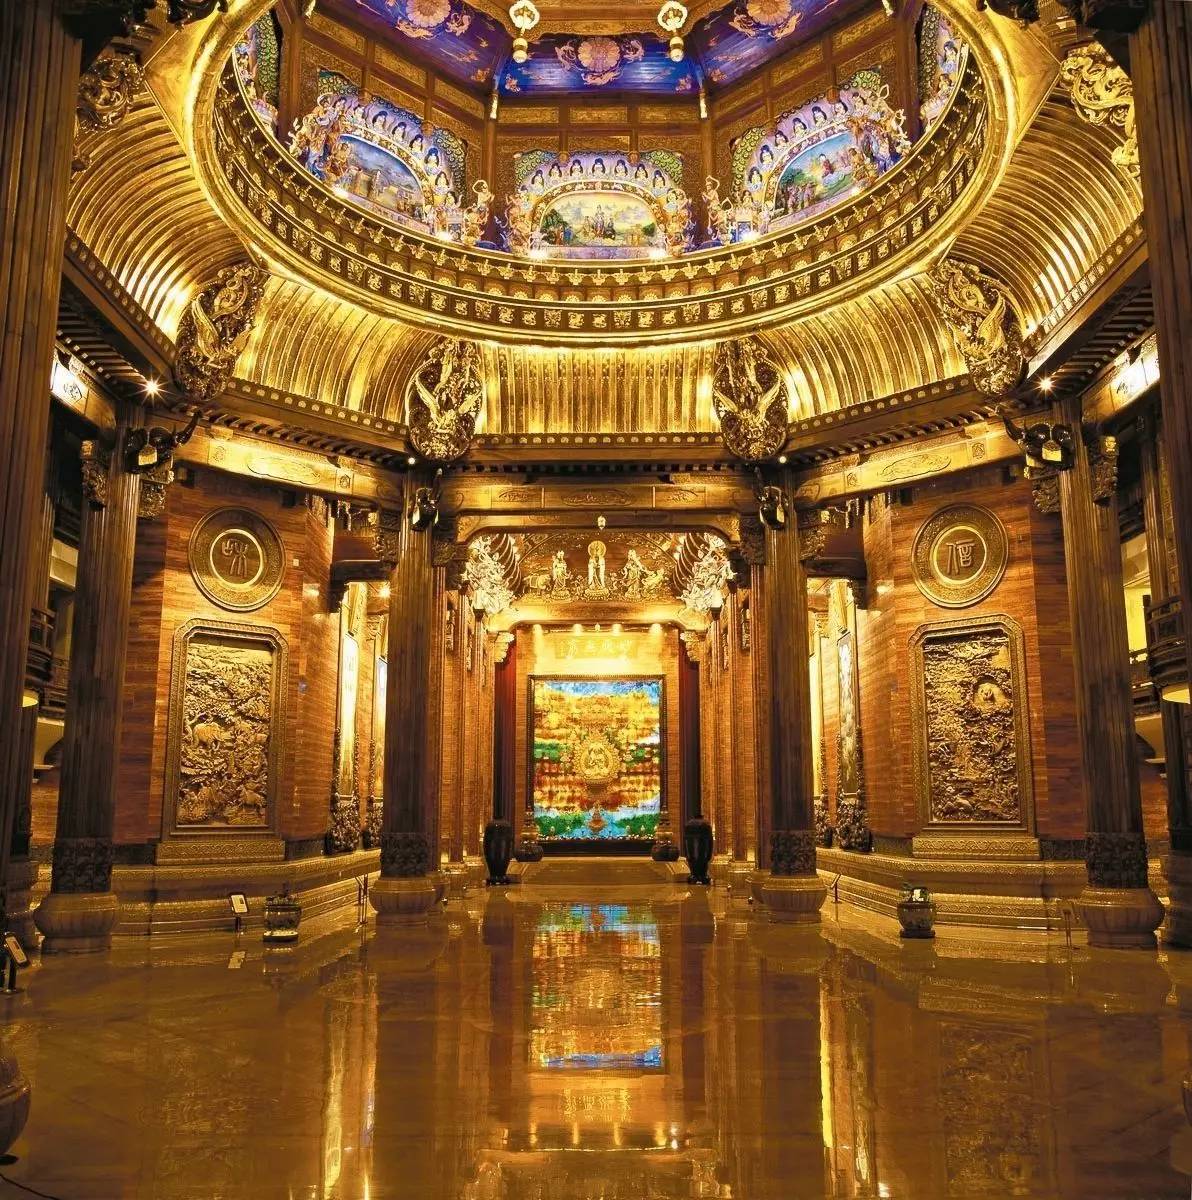 灵山梵宫内部各建筑空间独立且互相贯通,遍布艺术瑰宝.